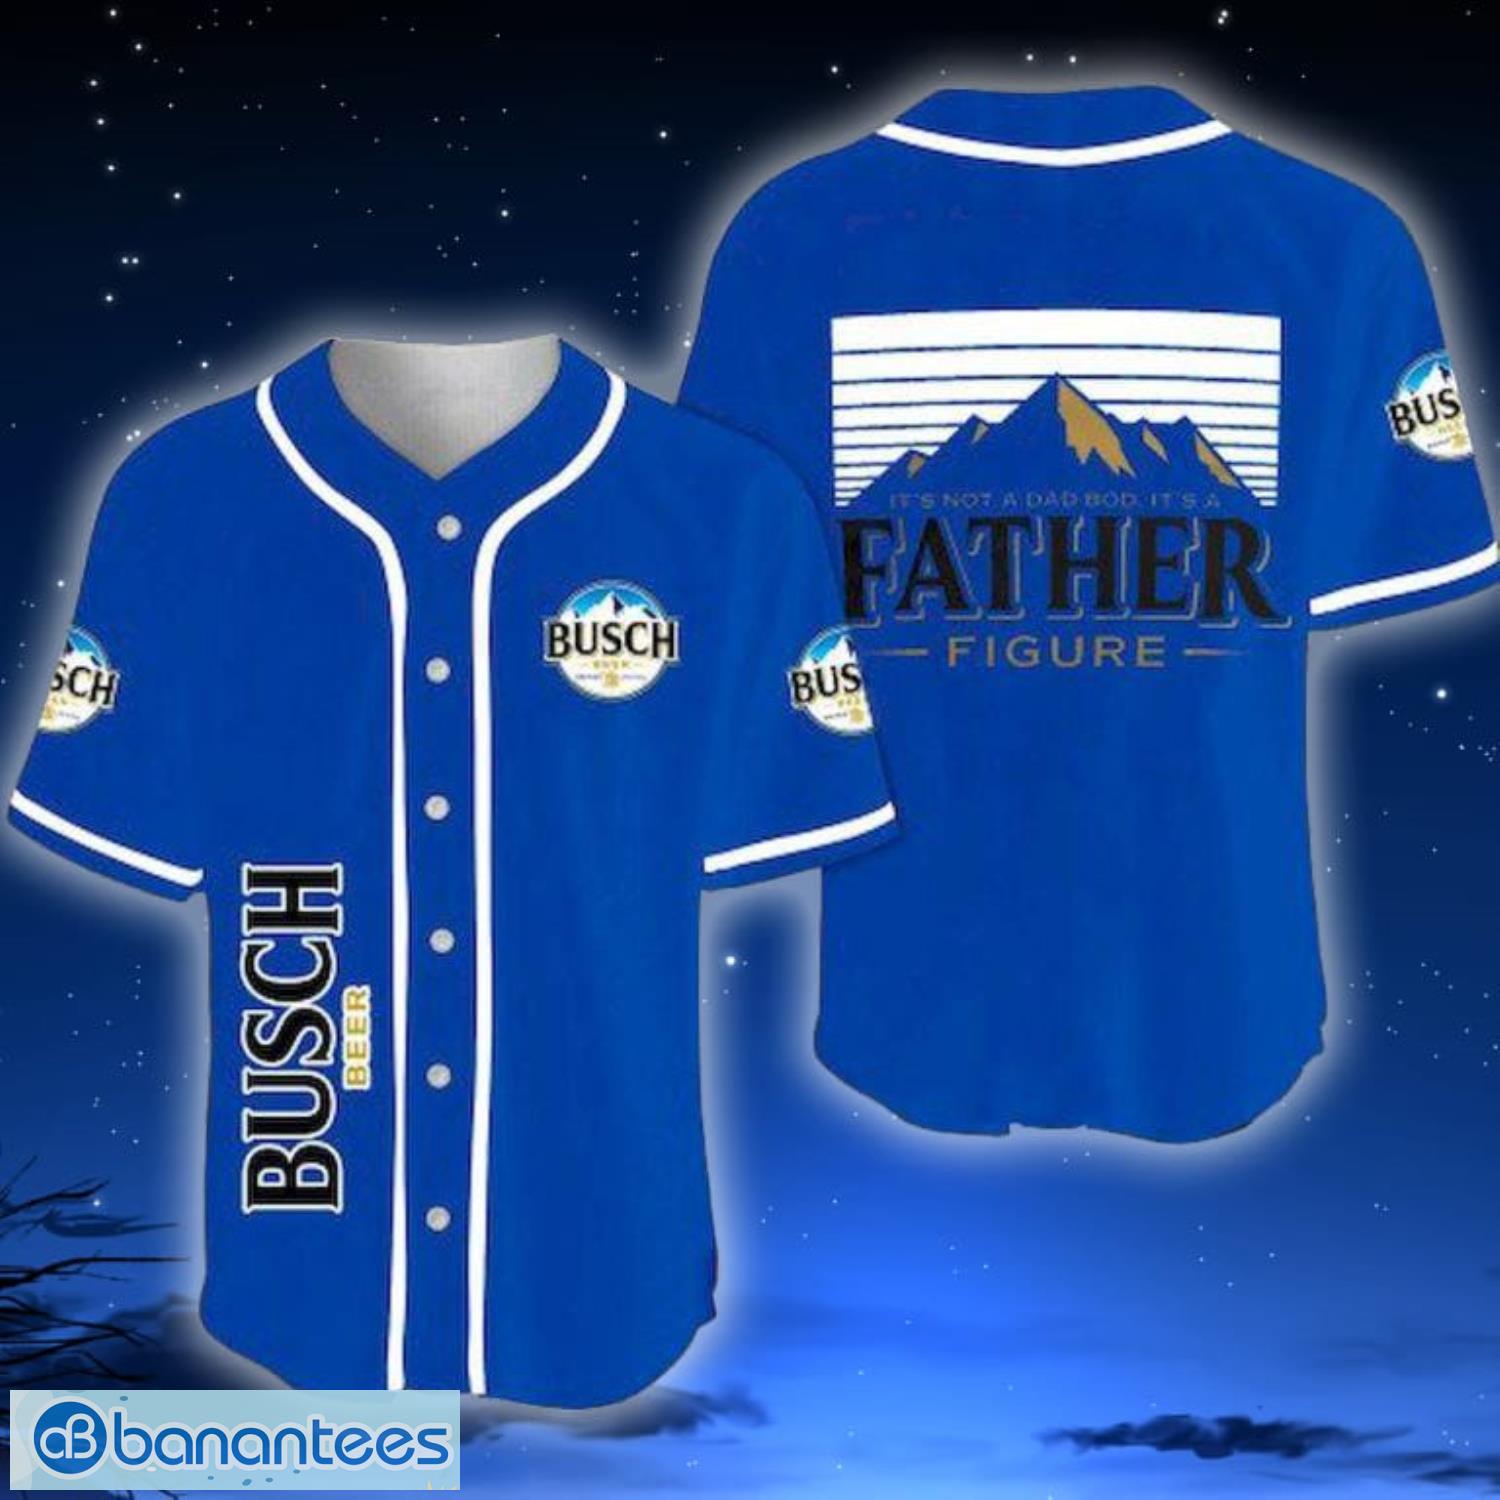 Baseball Dad Shirt Dad Baseball Shirt Fathers Day Gift 